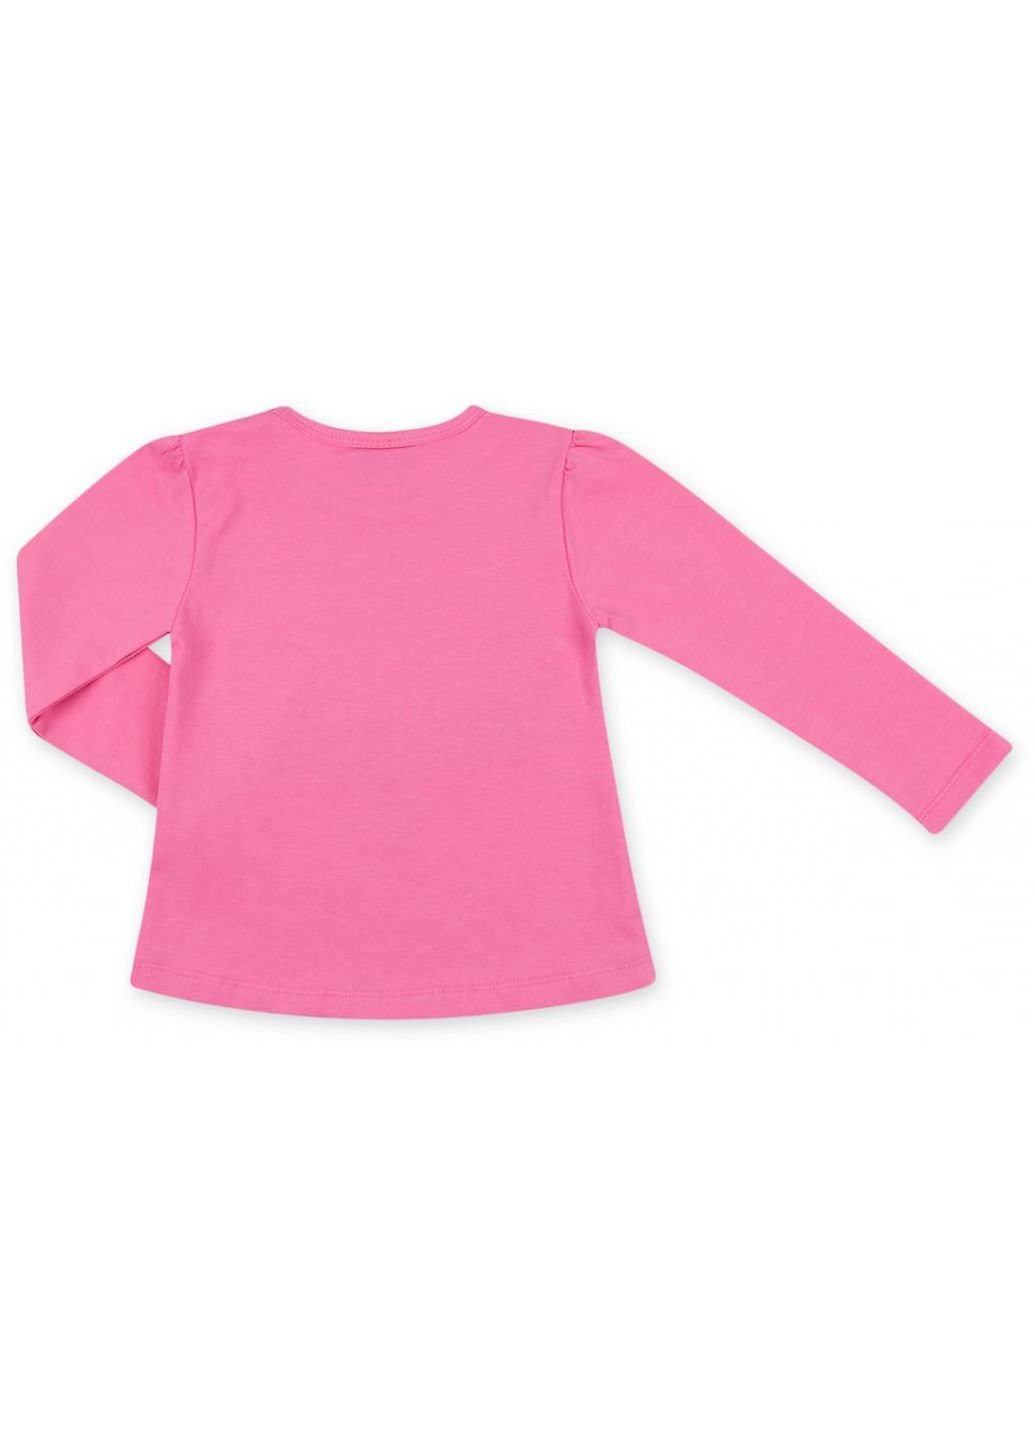 Темно-синий демисезонный набор детской одежды кофта с брюками "little angel" (8261-98g-blue-pink) Breeze